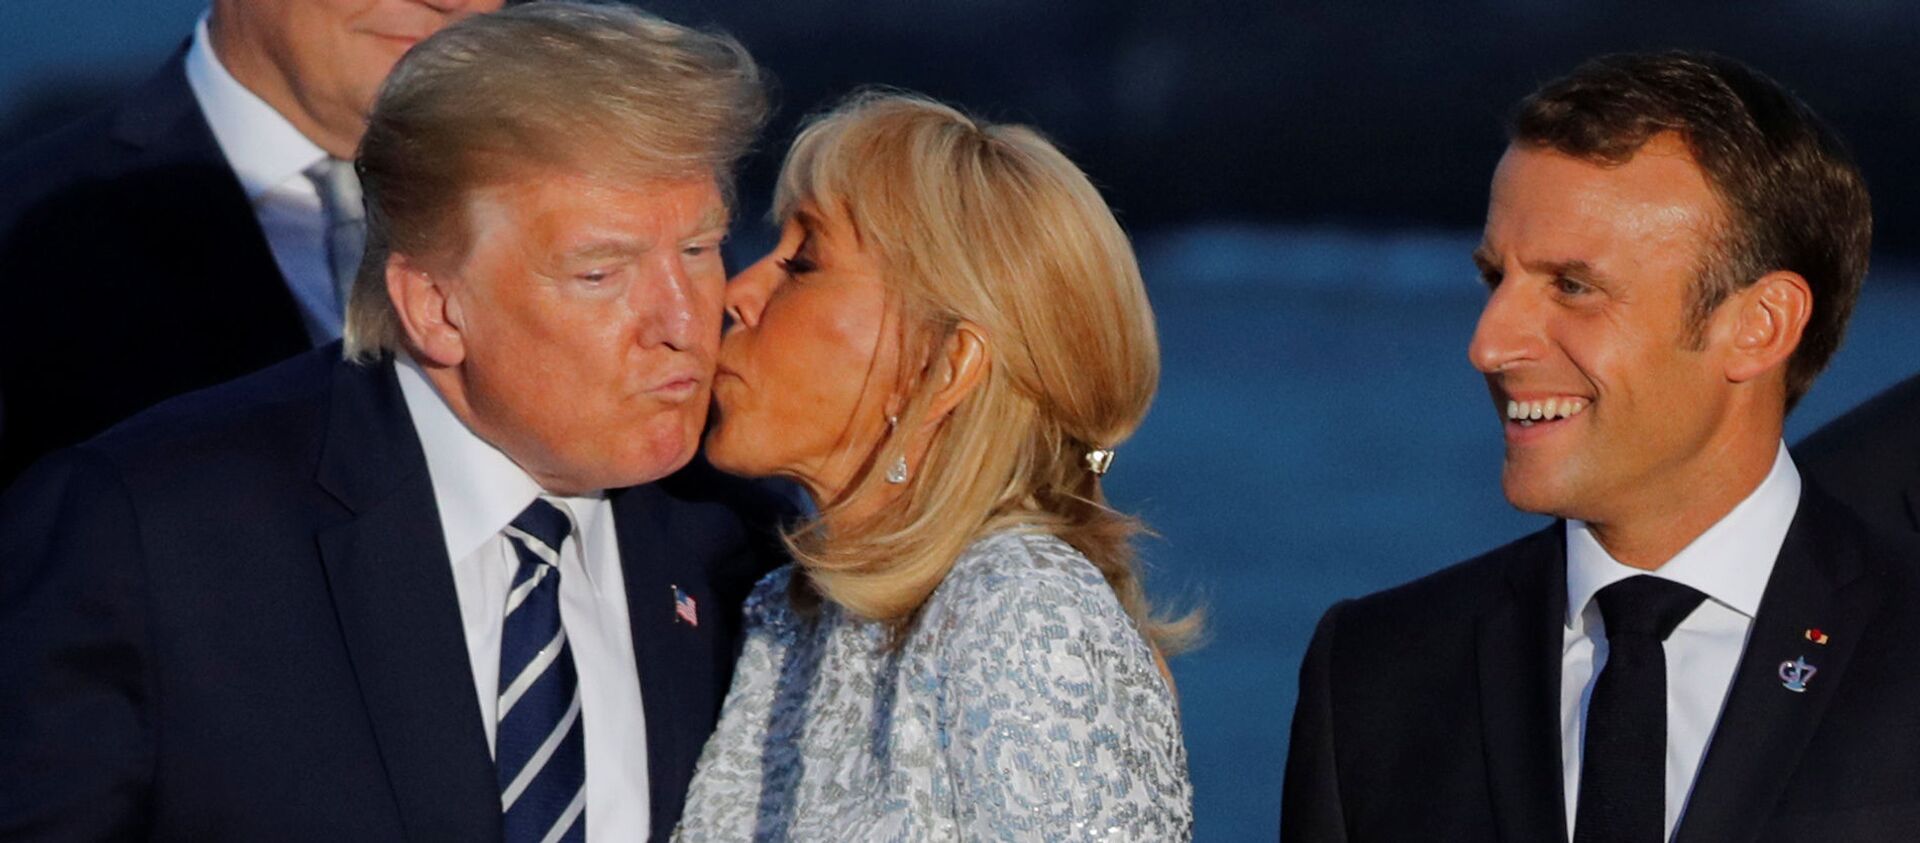 Fransa'nın Biarritz kentindeki G7 zirvesinde Fransa Cumhurbaşkanı Emmanuel Macron'un İran şokuna uğrayan ABD Başkanı Donald Trump'a aile fotoğrafı çekimi sırasında first lady Brigitte Macron öpücük kondurdu. - Sputnik Türkiye, 1920, 25.08.2019